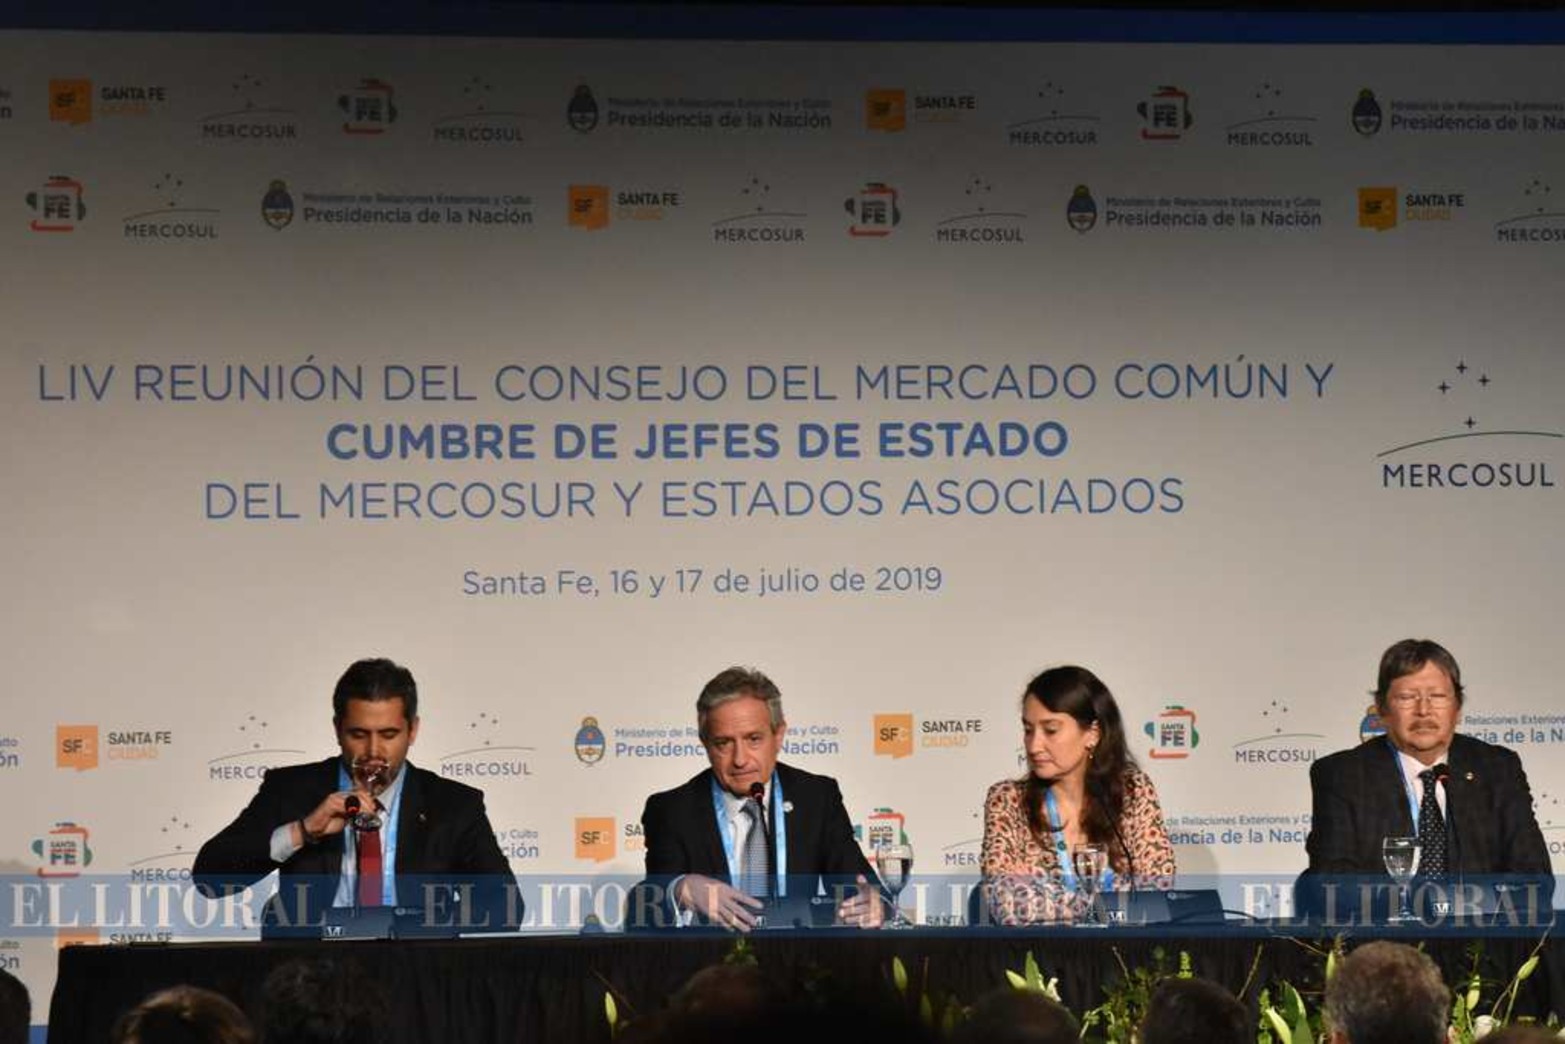 Andrés Ibarra, Ministro de Modernización de la Nación, anunciando que no se cobrará mas el roaming entre los países que integran el Mercosur. No está funcionando a la fecha.